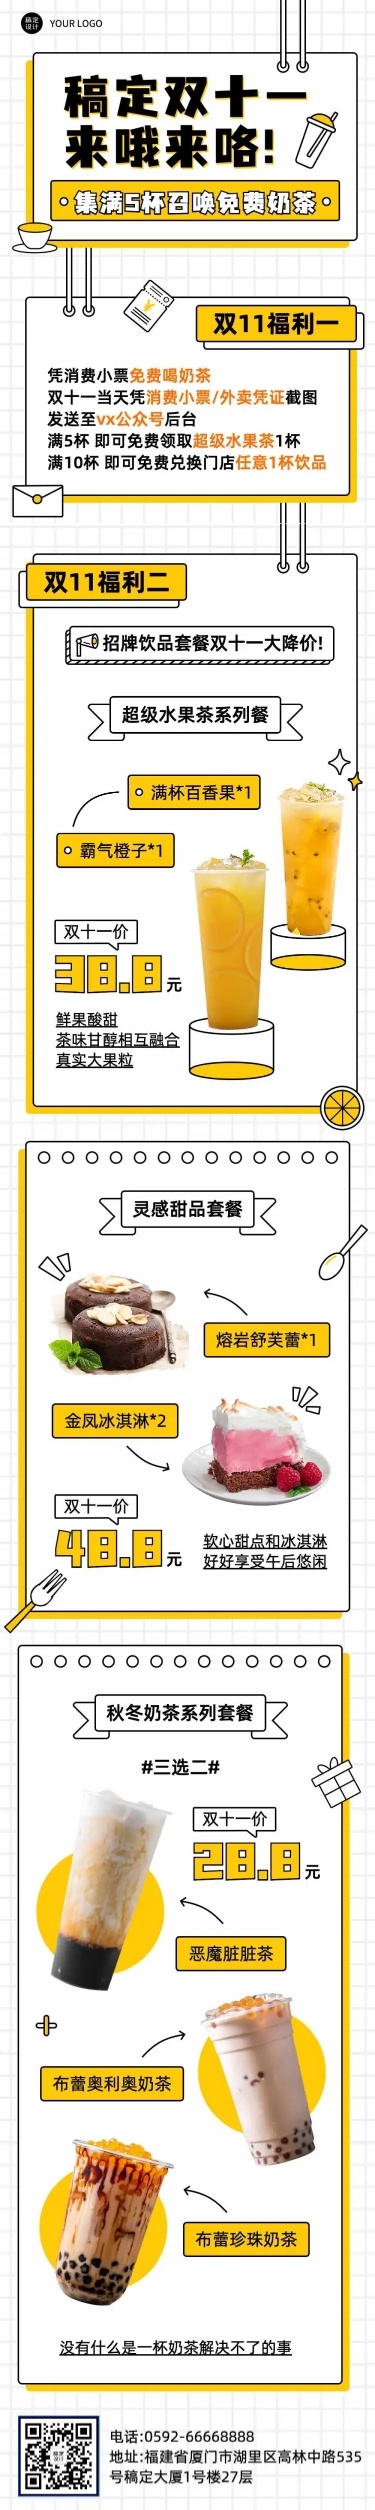 双十一奶茶饮品营销简约文章长图